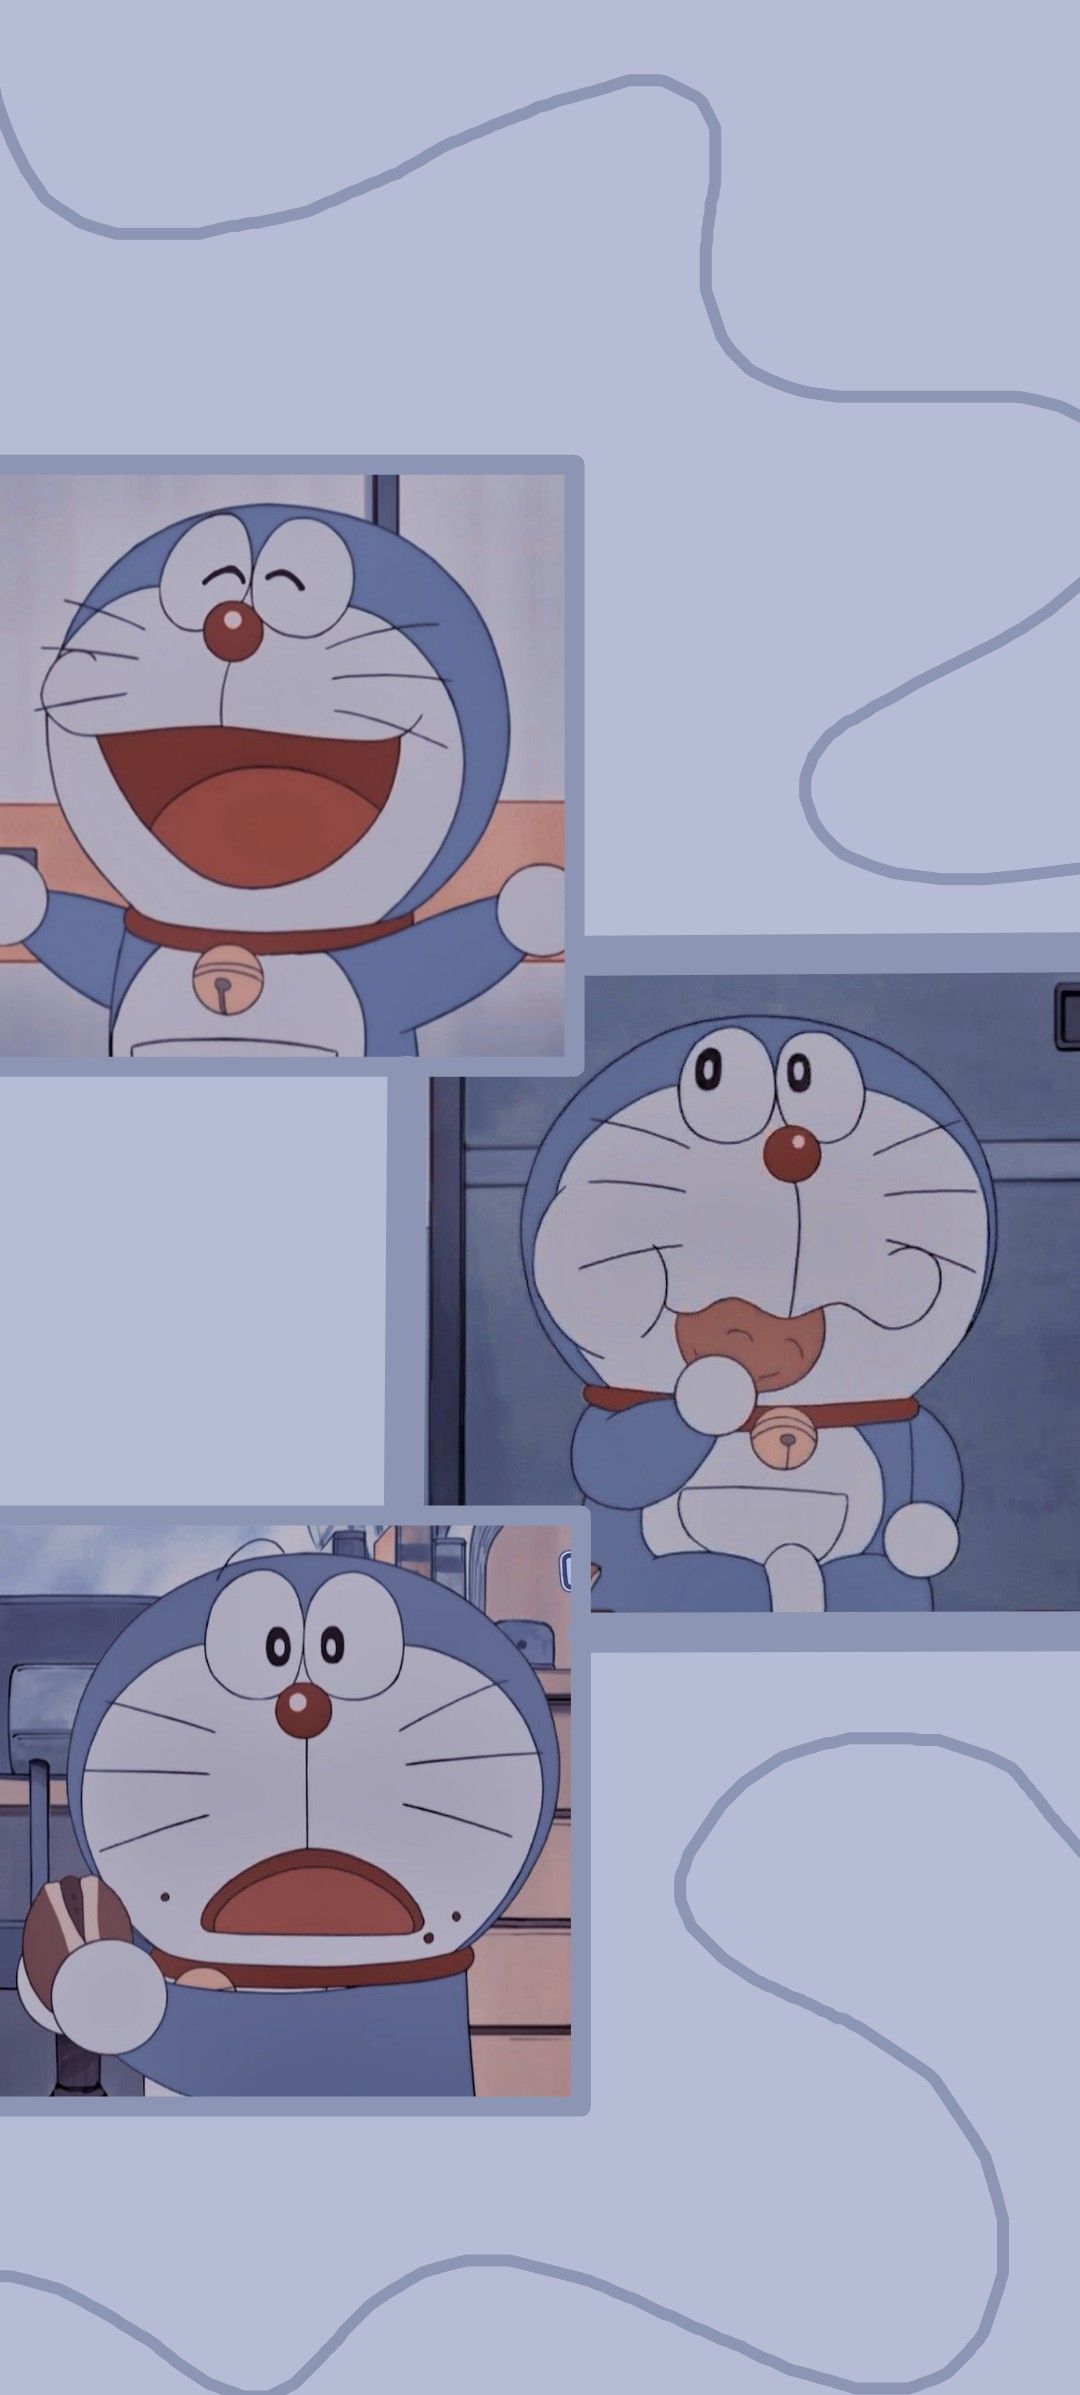 Doraemon wallpaper. Doraemon wallpaper, Cute emoji wallpaper, Wallpaper iphone cute